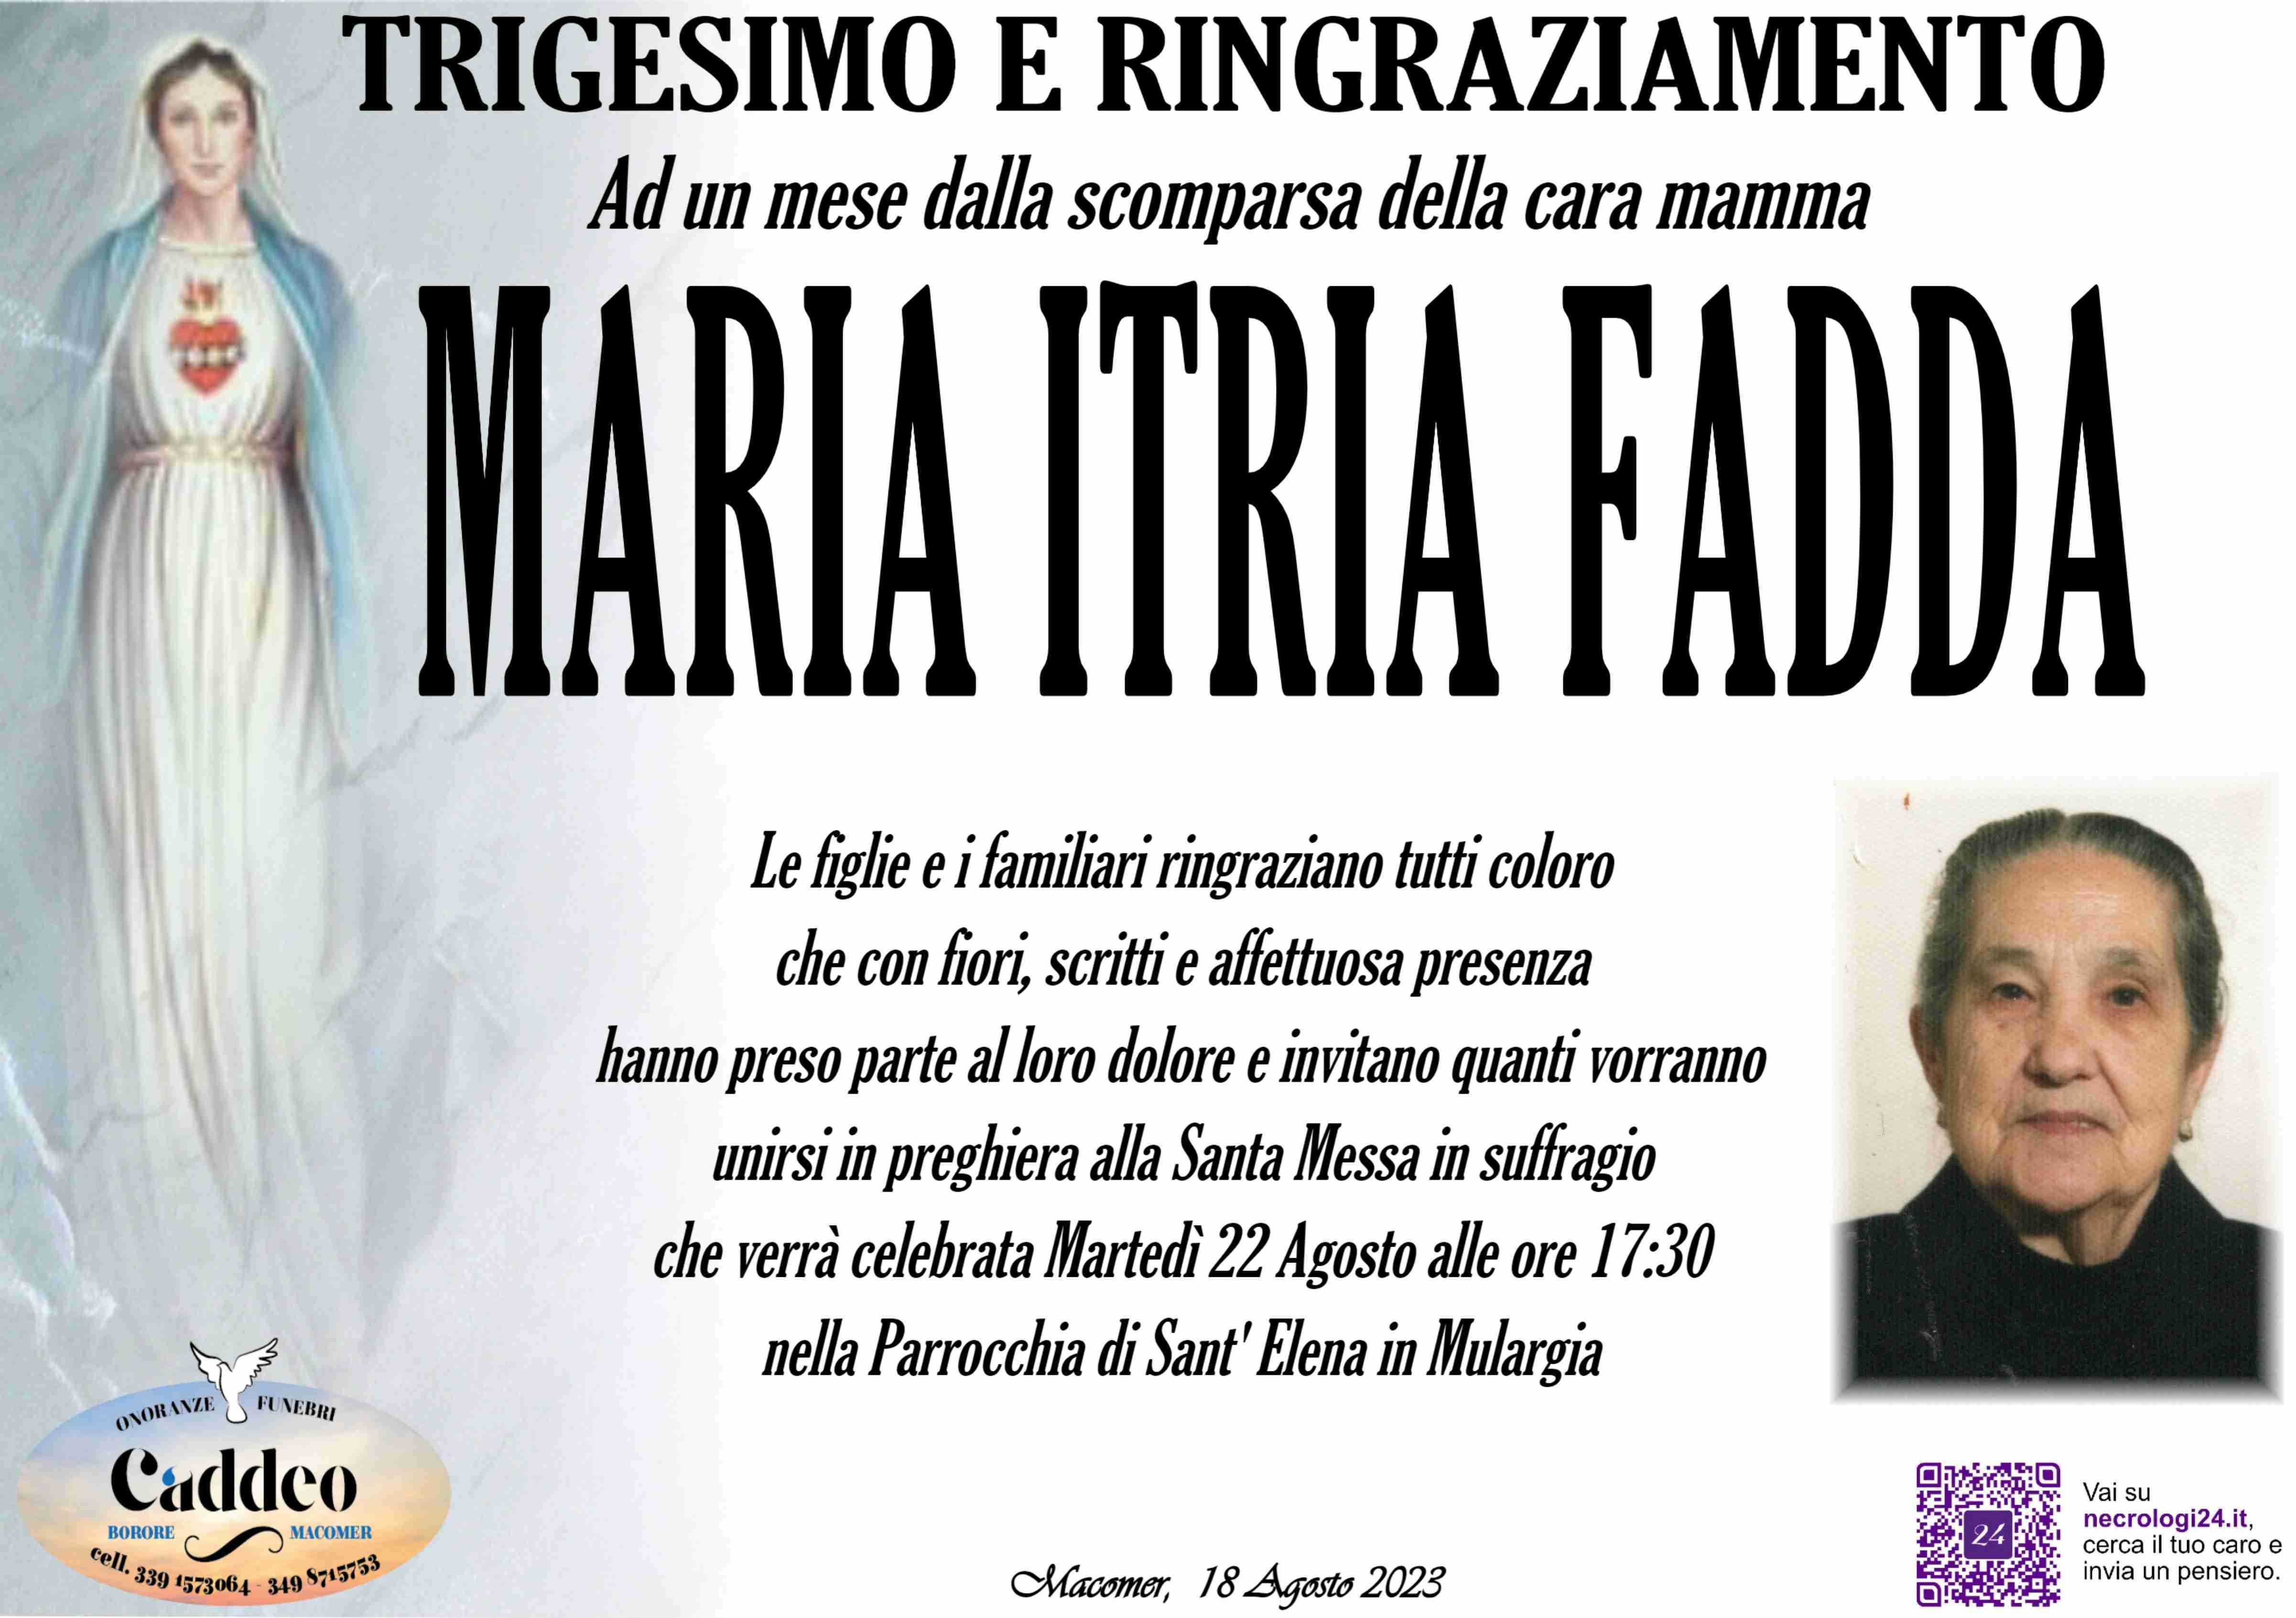 Maria Itria Fadda